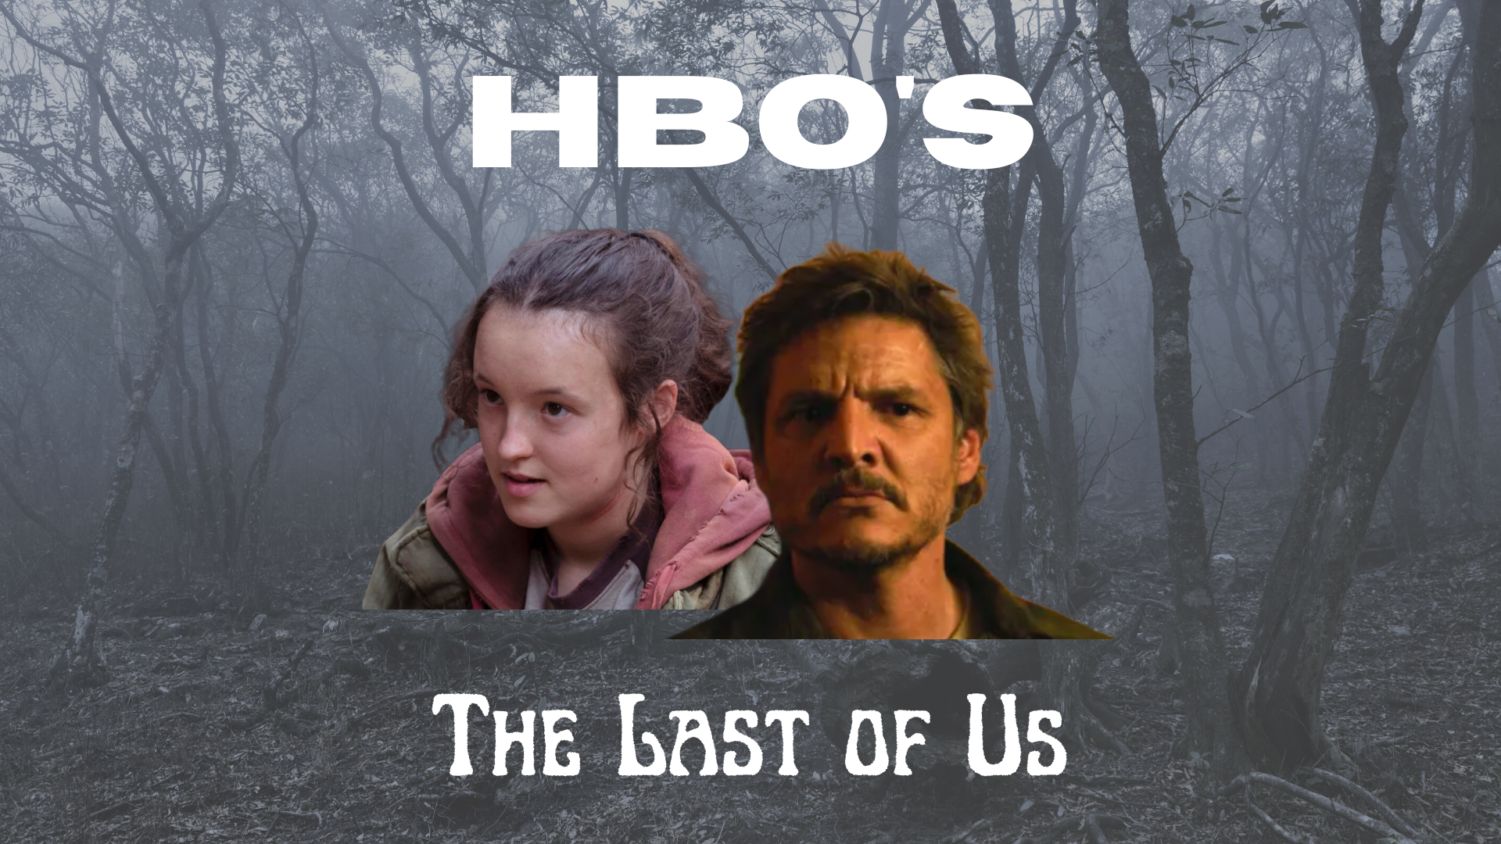 The Last of Us on Binge – Episode 2 Recap – 'Infected